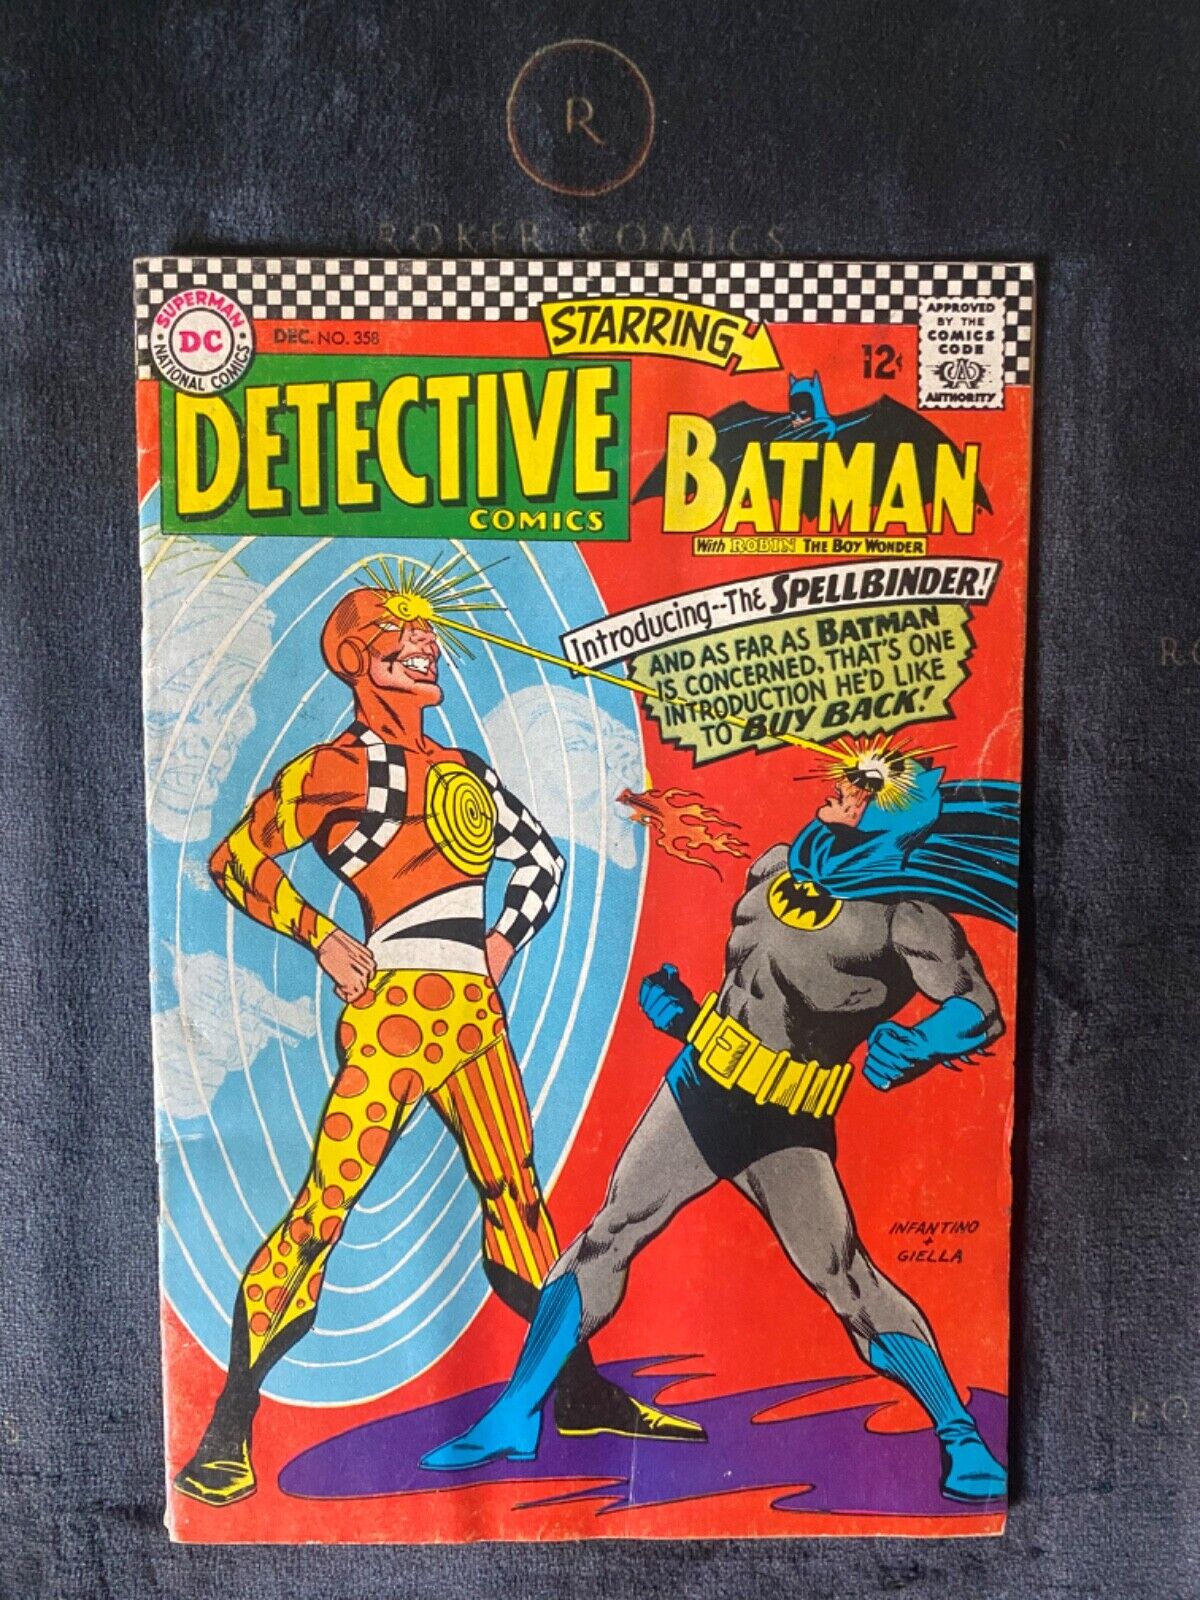 1966 Detective Comics #358